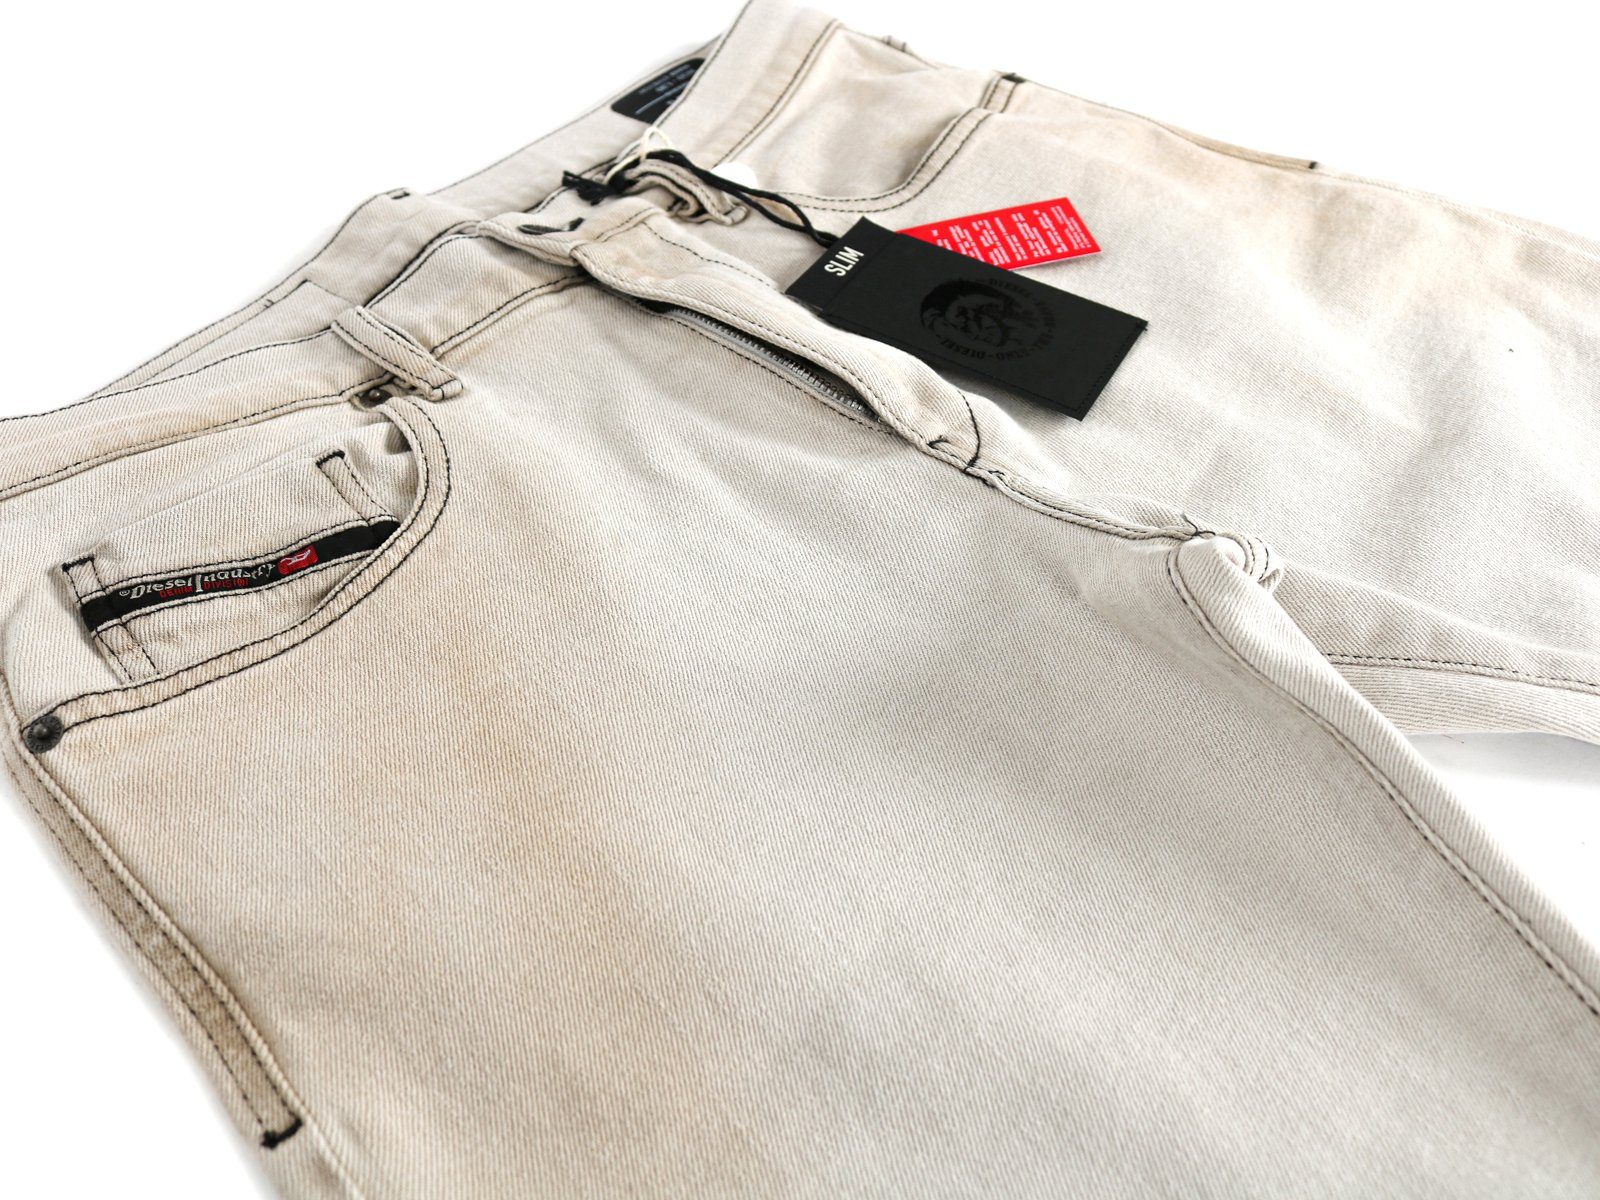 D-Strukt-SP20 Diesel Slim-fit-Jeans Creme - 09A52 Look - Vintage Weiß